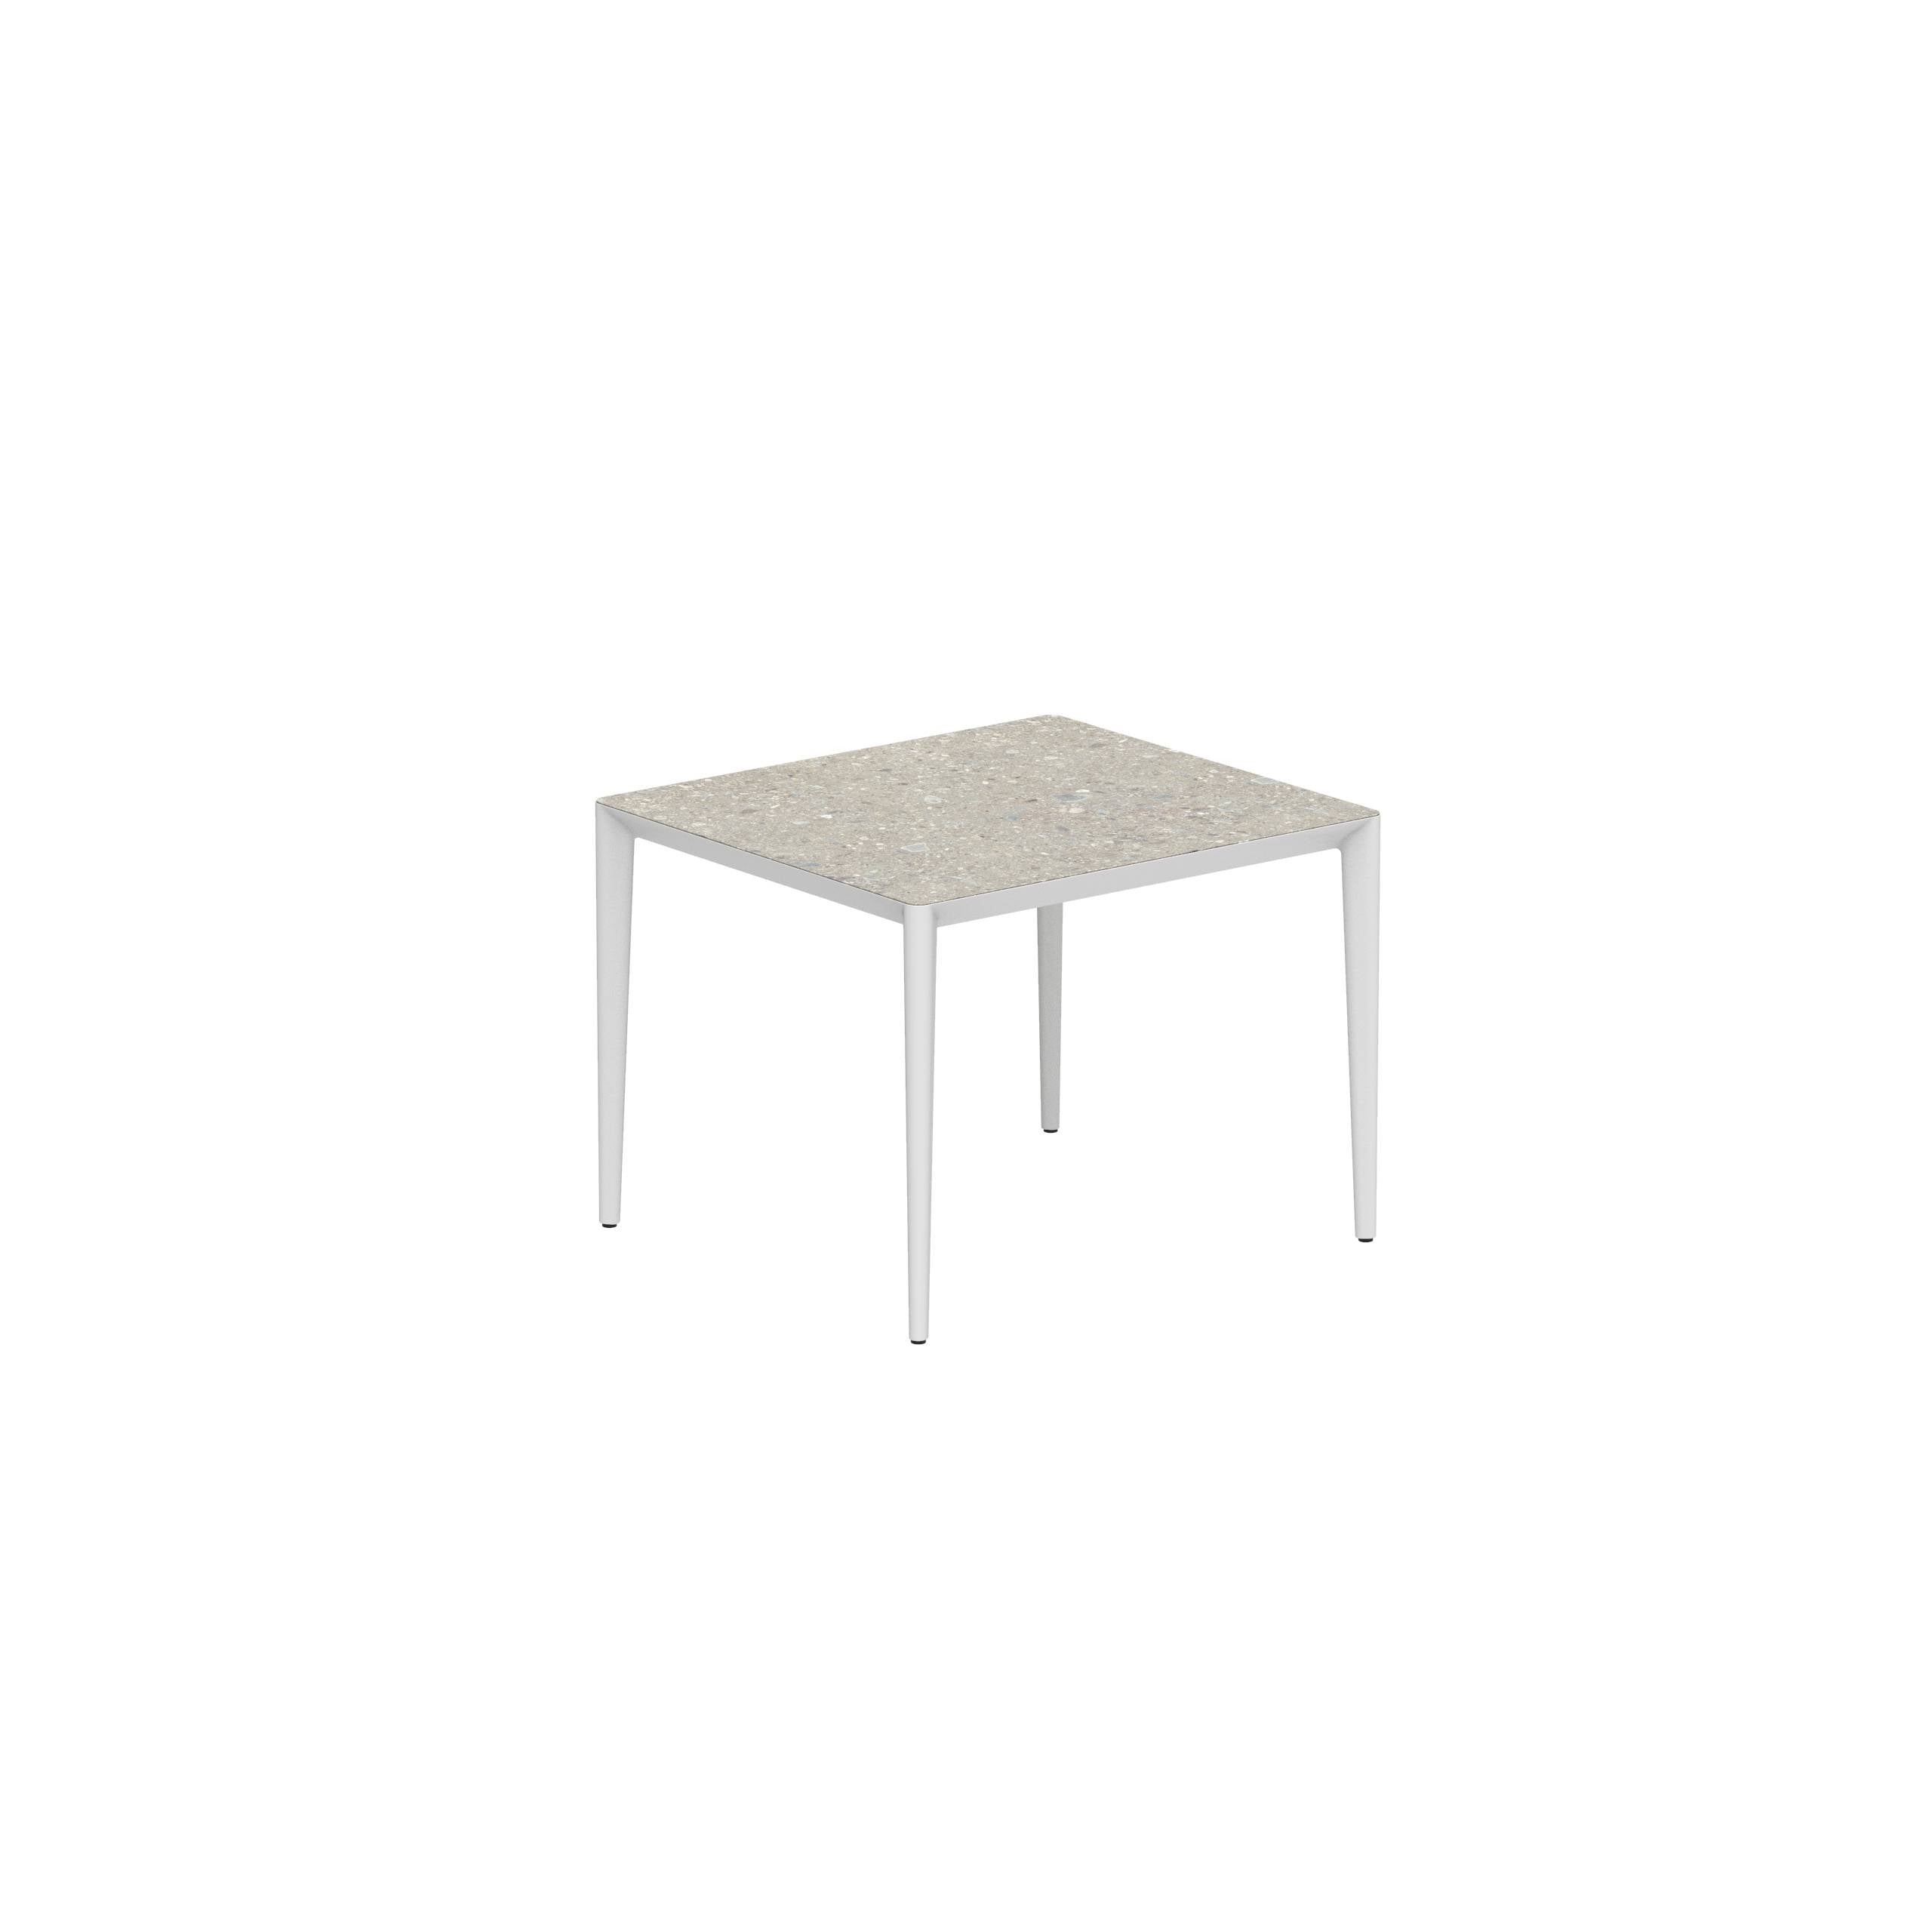 U-Nite Table 100x90cm White With Ceramic Tabletop In Ceppo Dolomitica